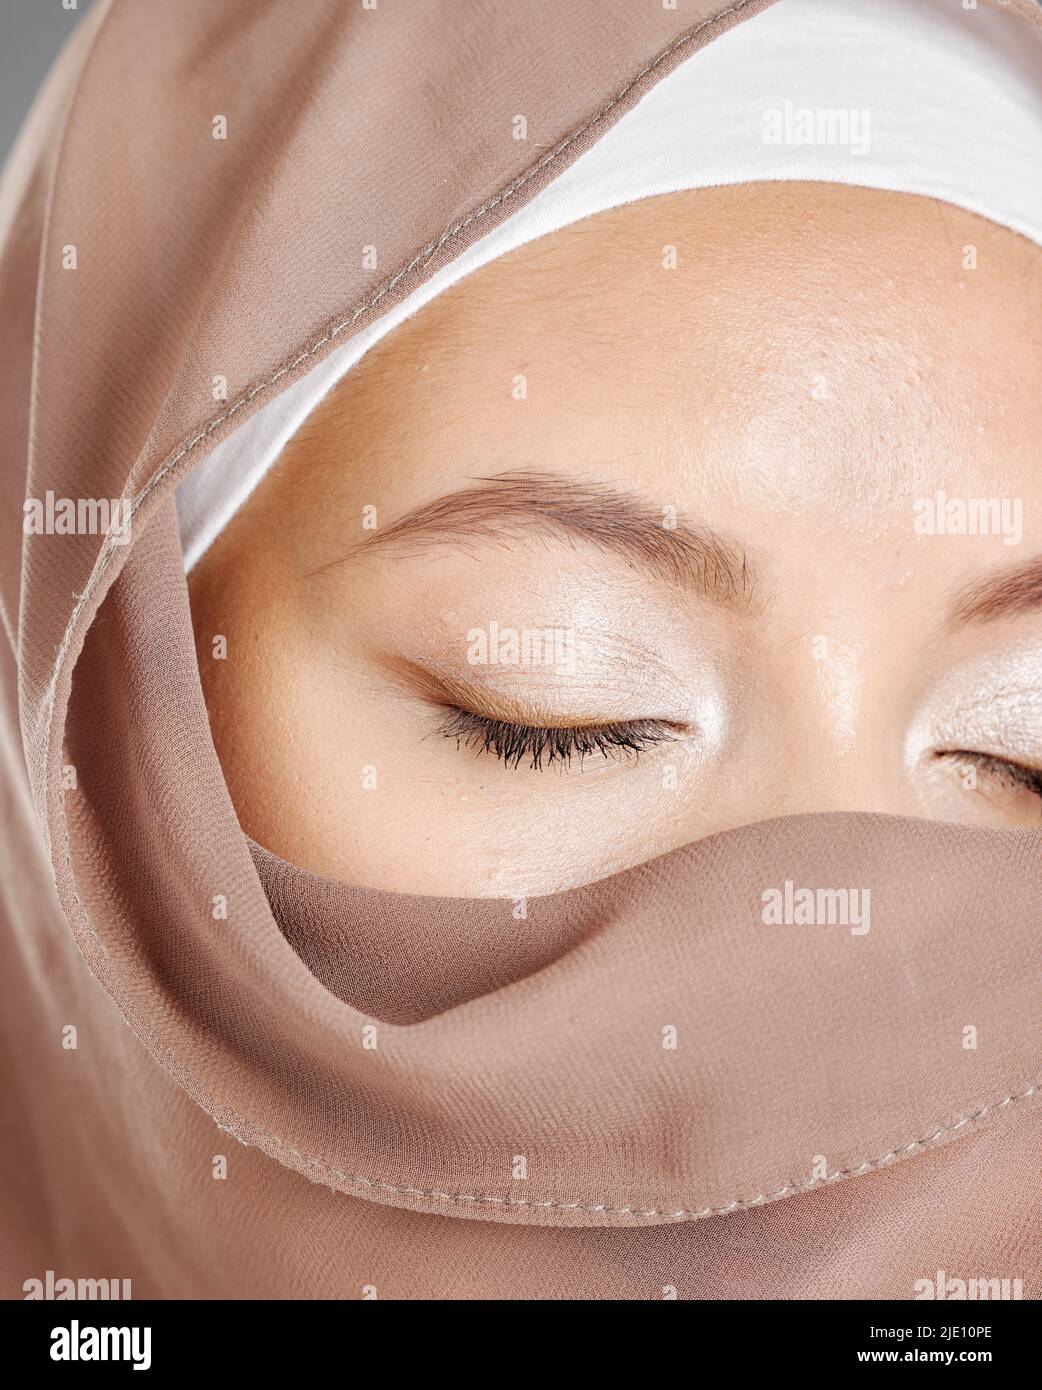 Bescheidene arabische Frau, die Make-up trägt und das Gesicht mit einem braunen traditionellen Hijab bedeckt ist. Nahaufnahme einer schönen jungen muslimischen Frau mit strahlender Haut und Stockfoto